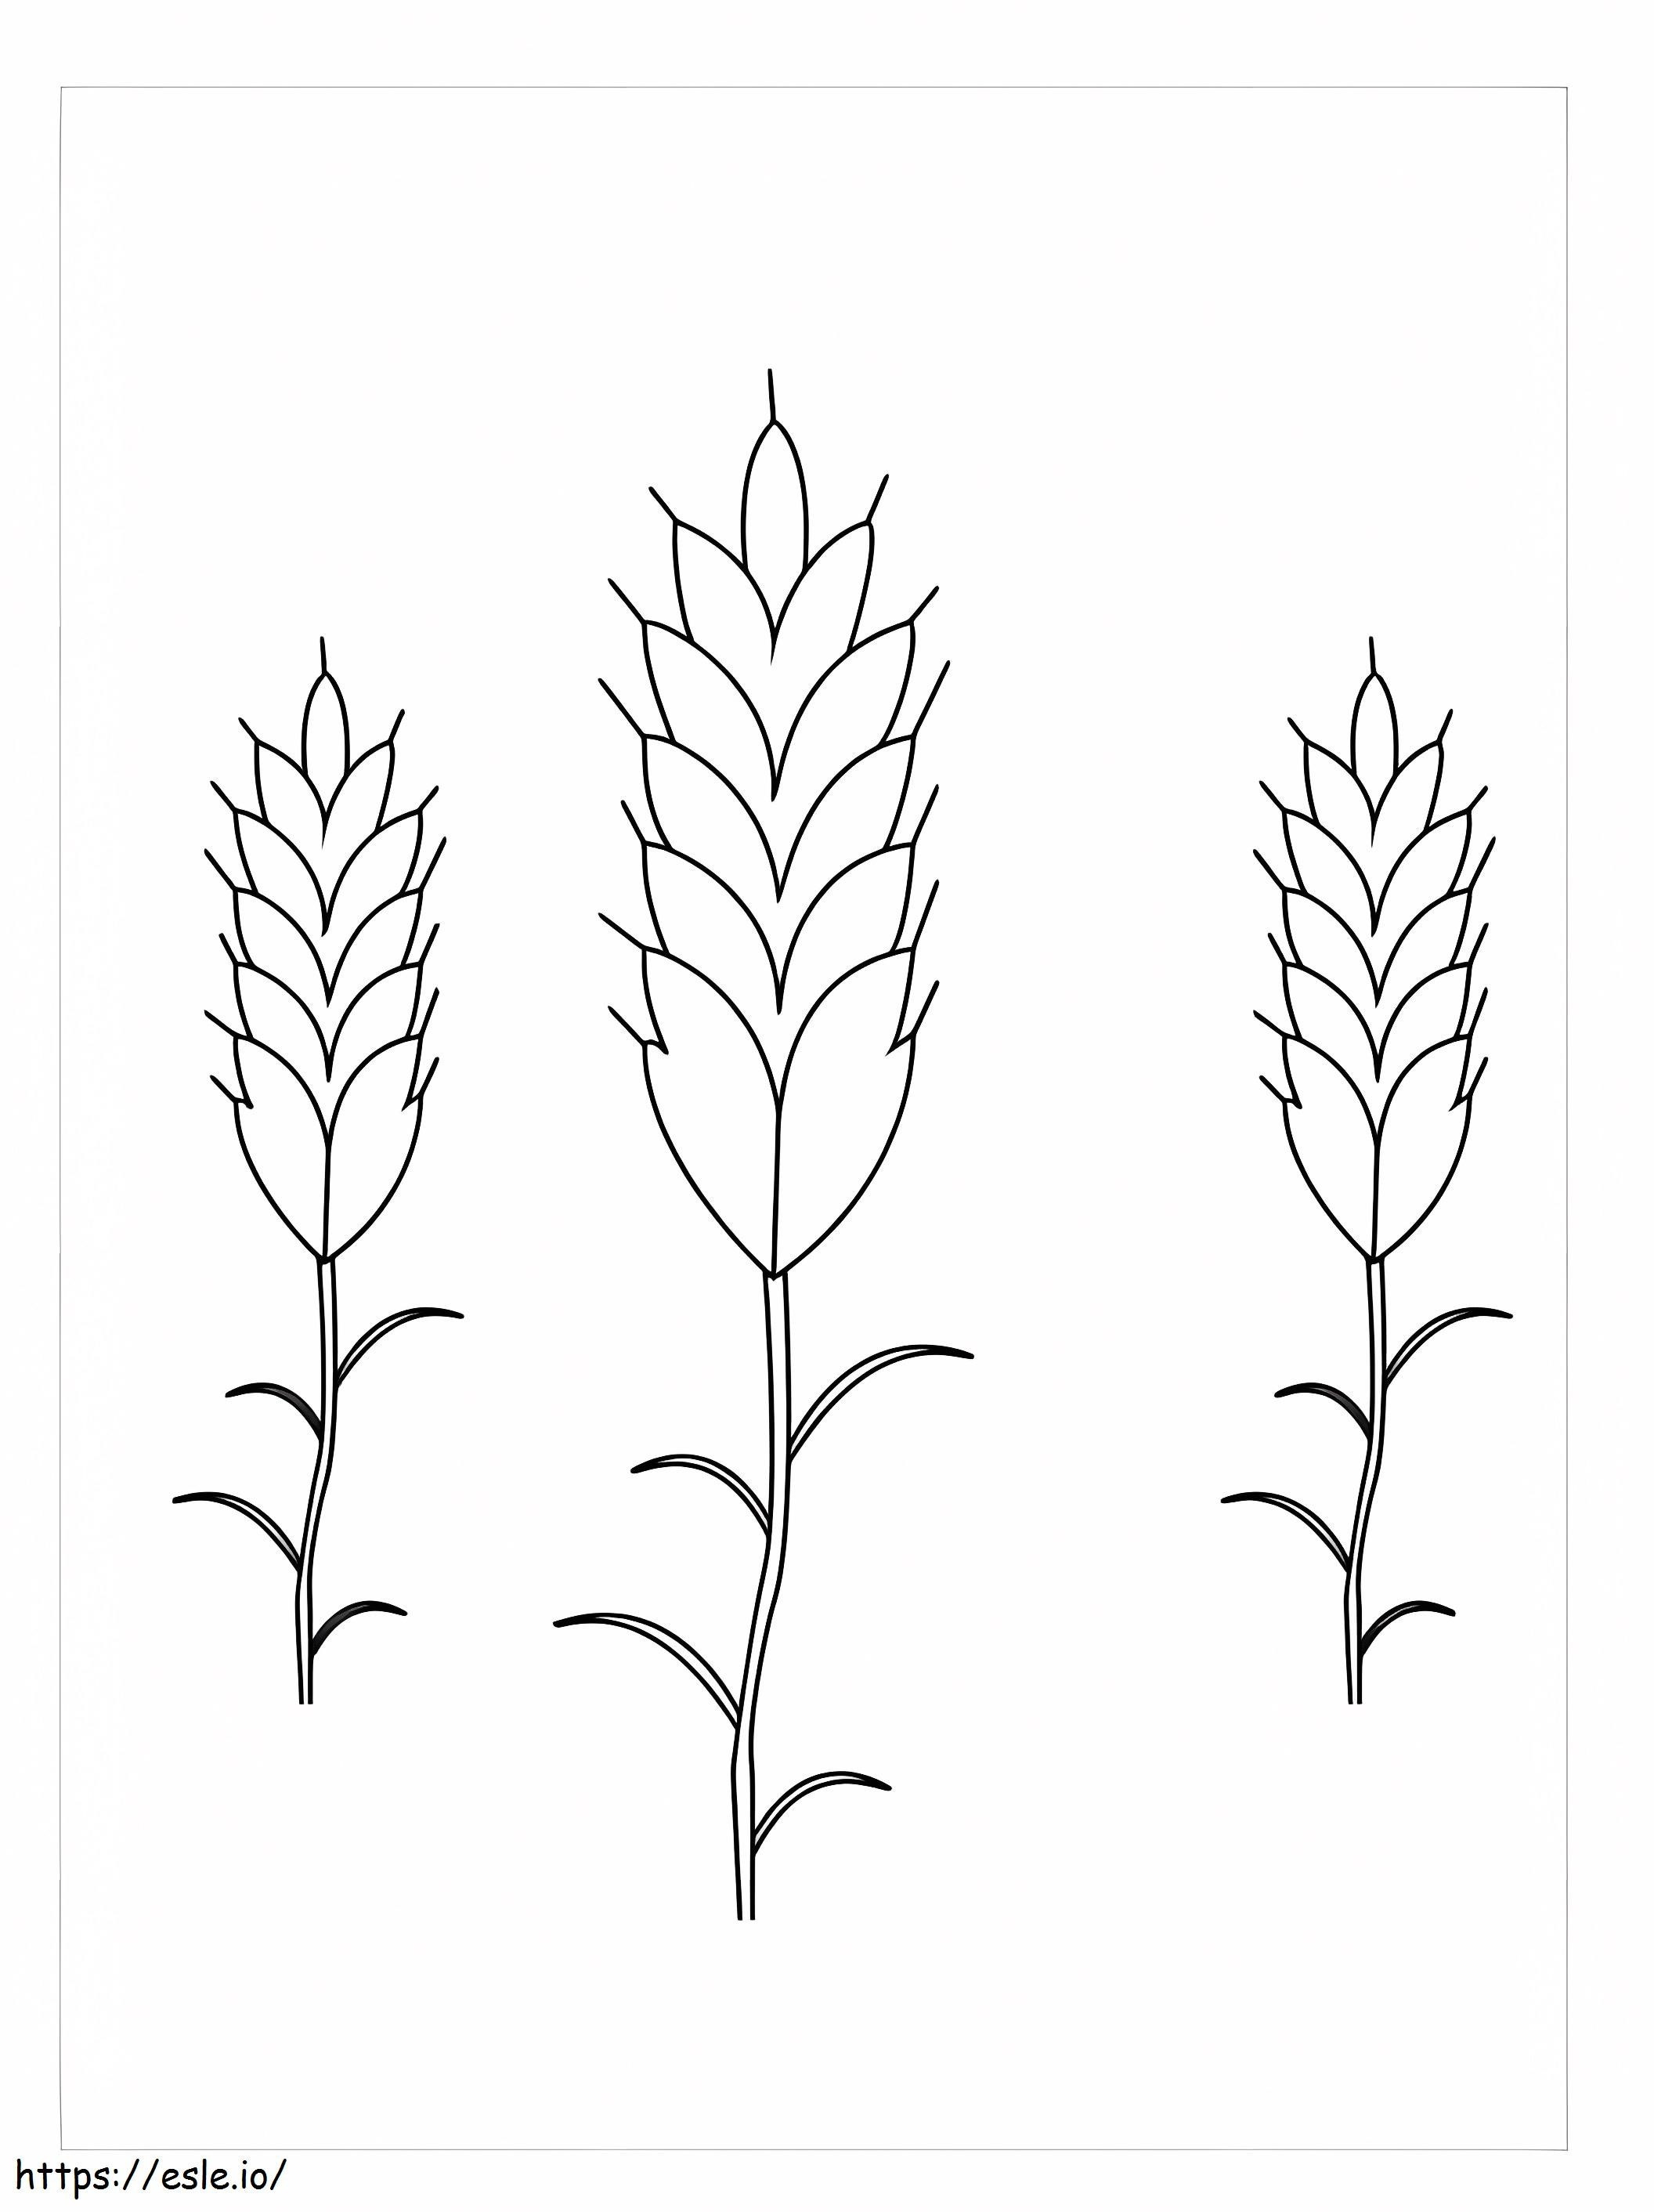 Coloriage Trois plants de blé à imprimer dessin